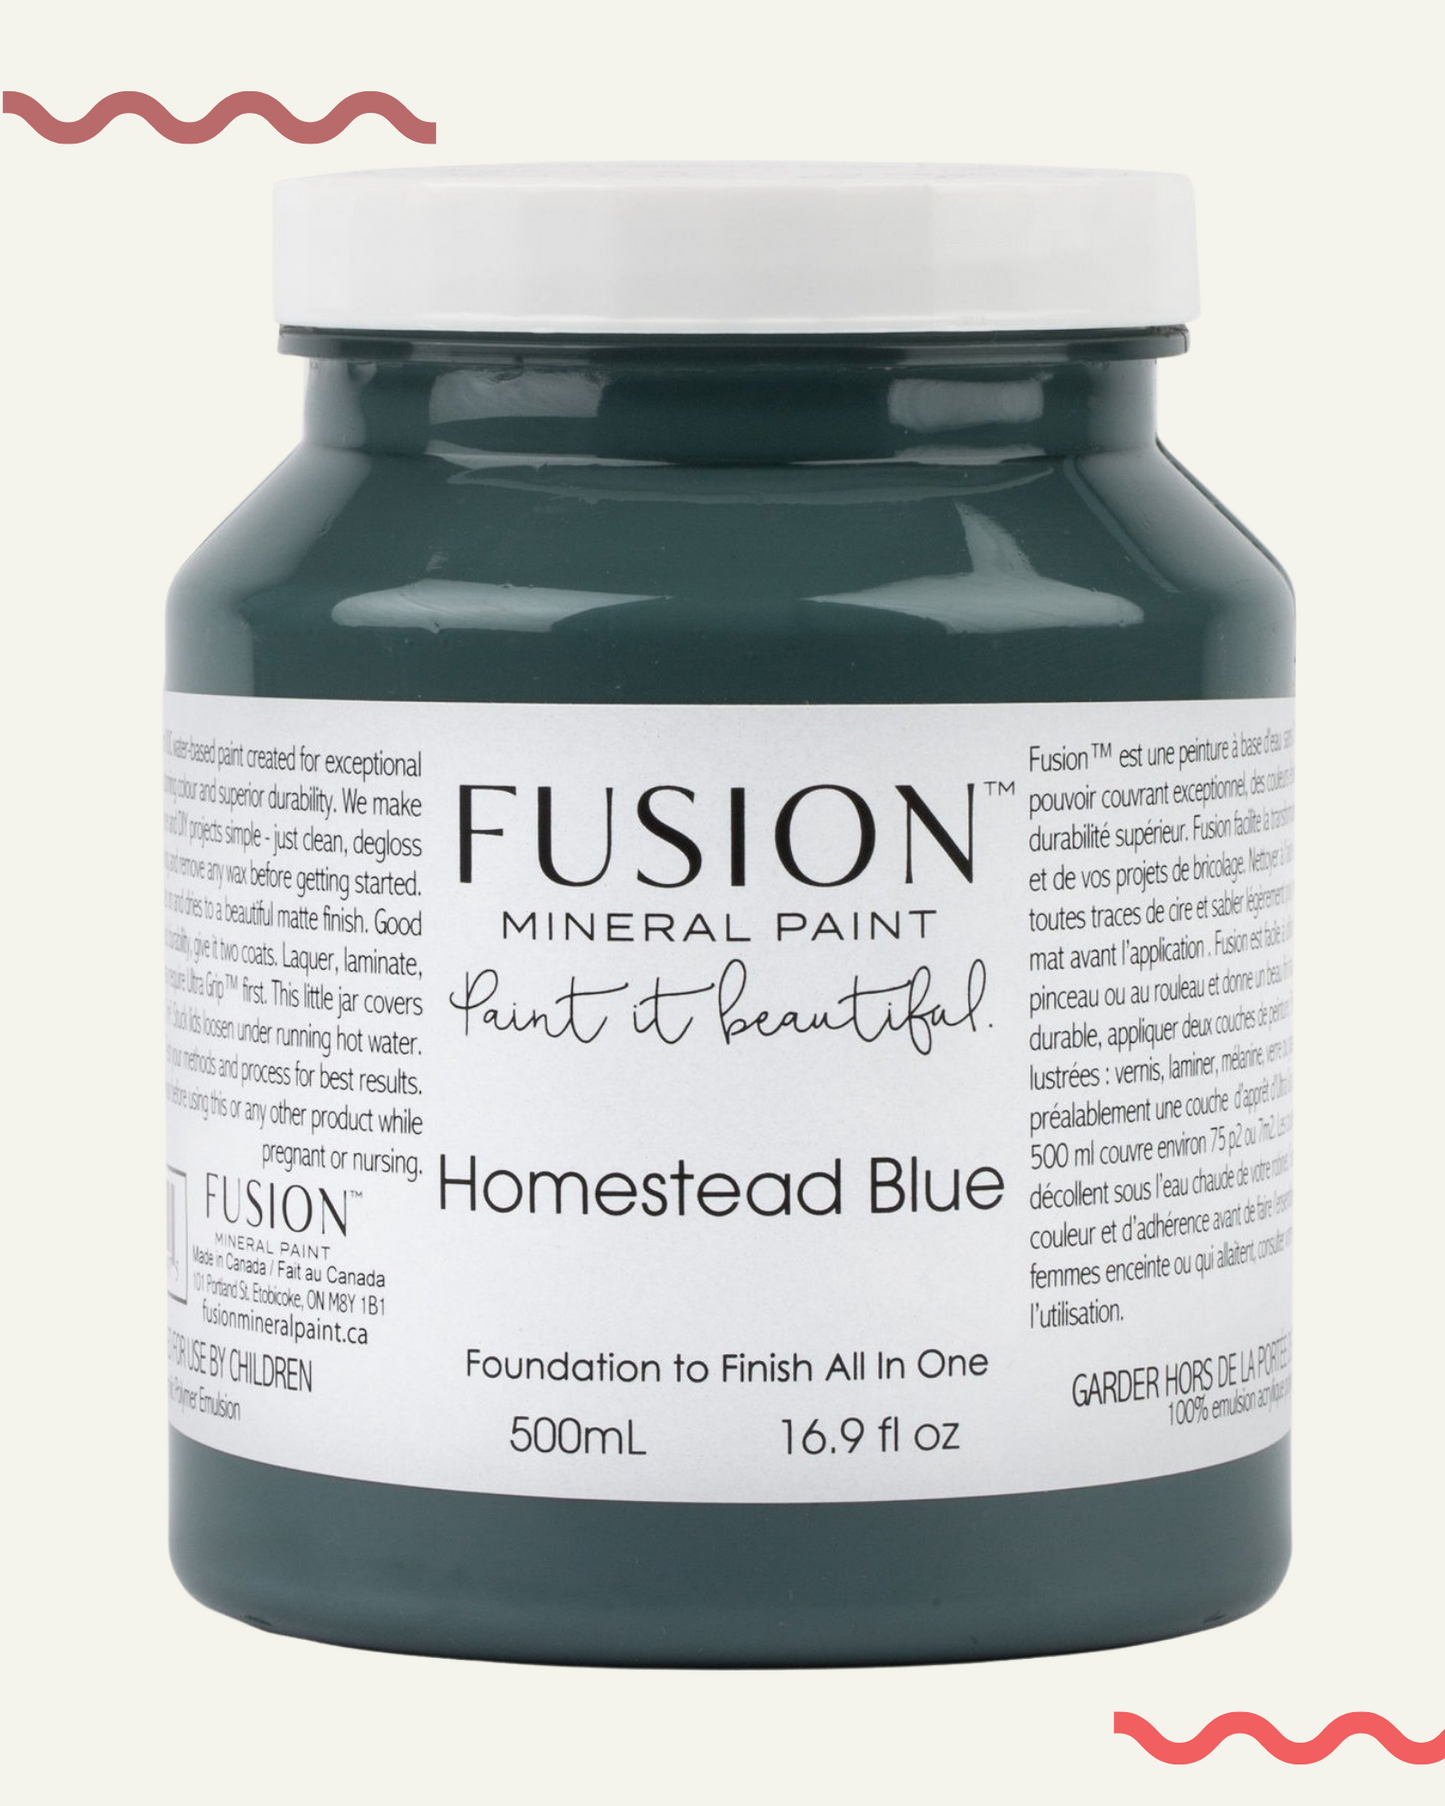 peinture minerale fusion homestead blue